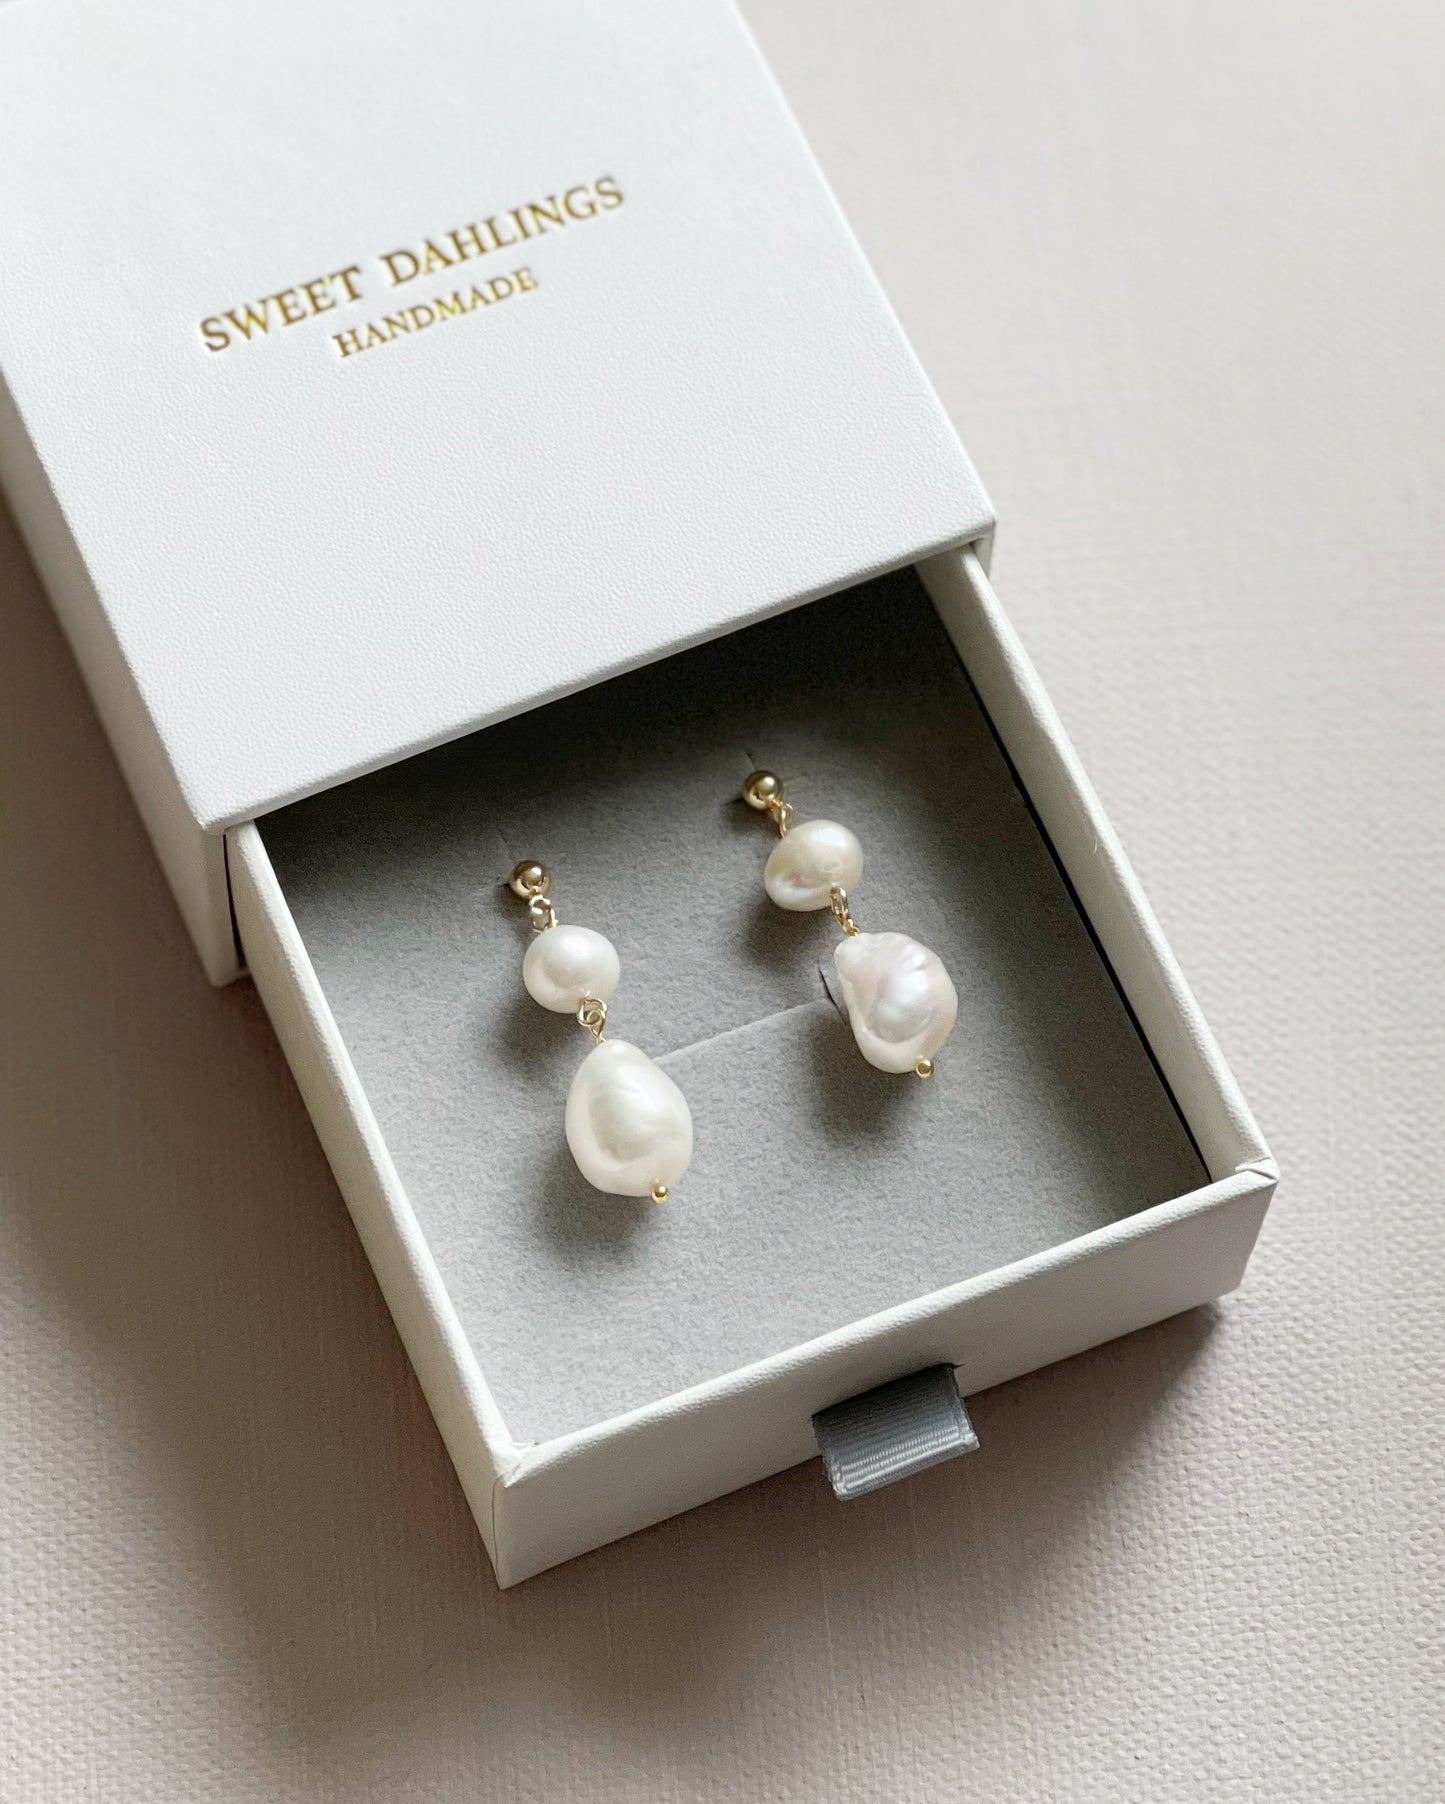 Double pearls double joy heirloom earrings